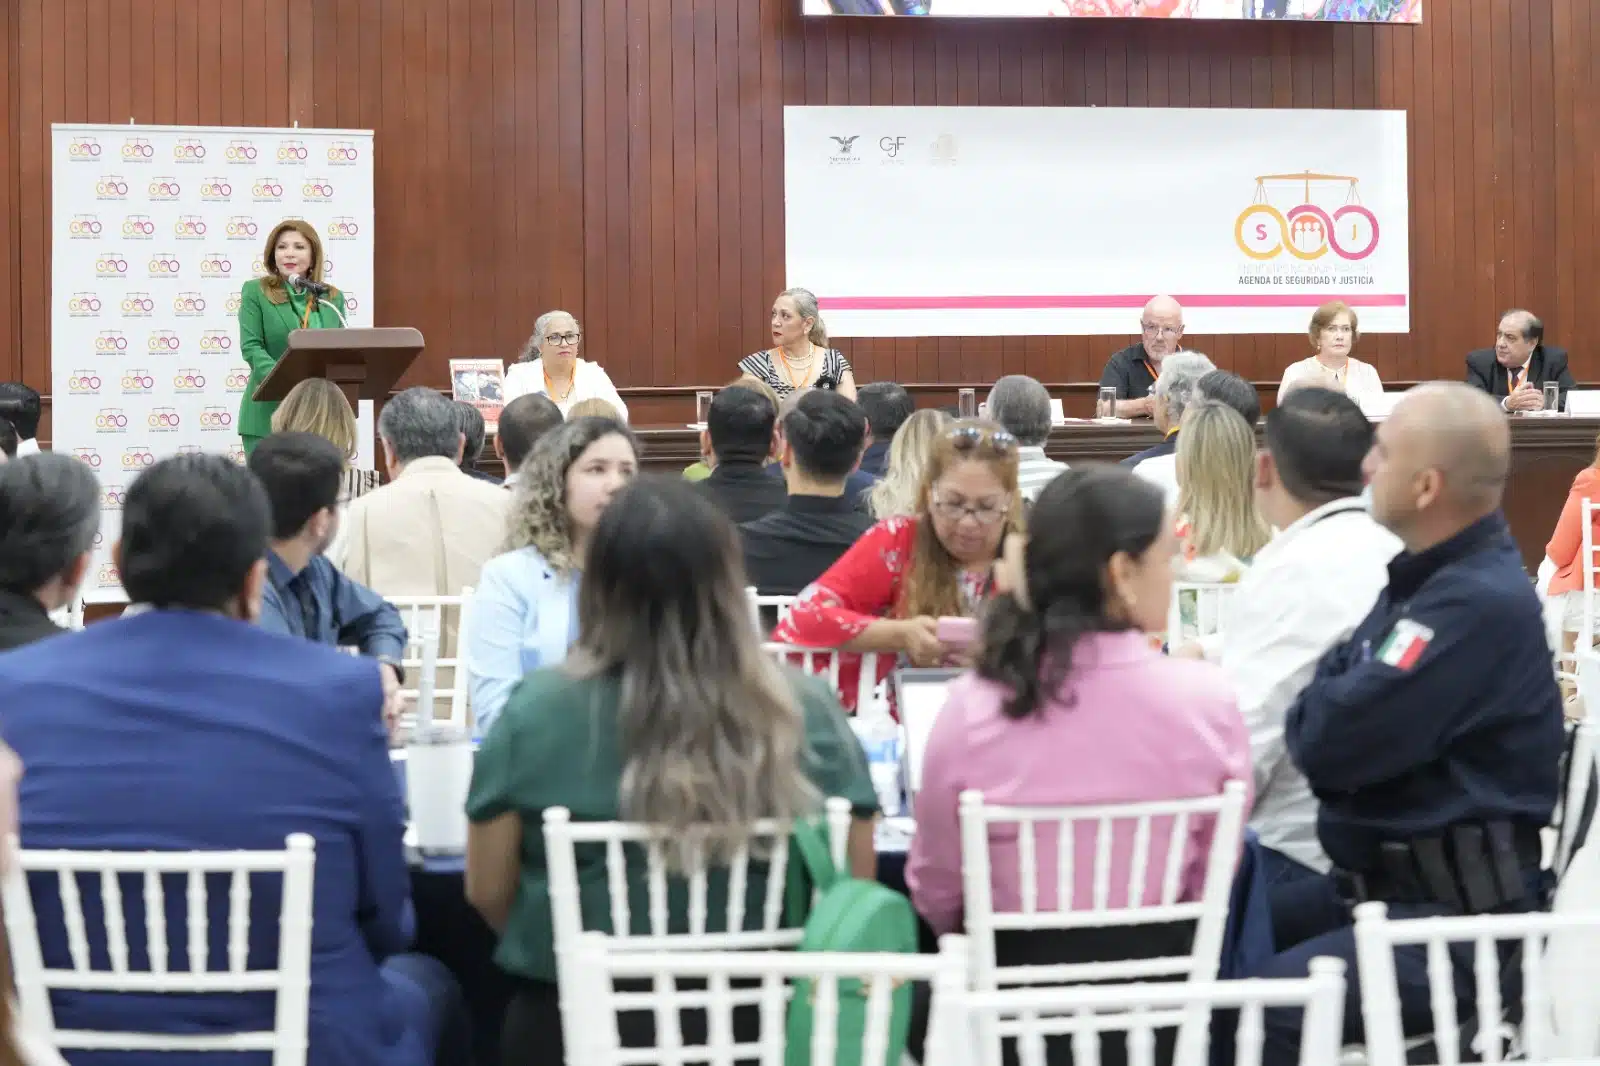 Encuentro Nacional evento convocado por la Suprema Corte de Justicia de la Nación en el Congreso del Estado de Sinaloa